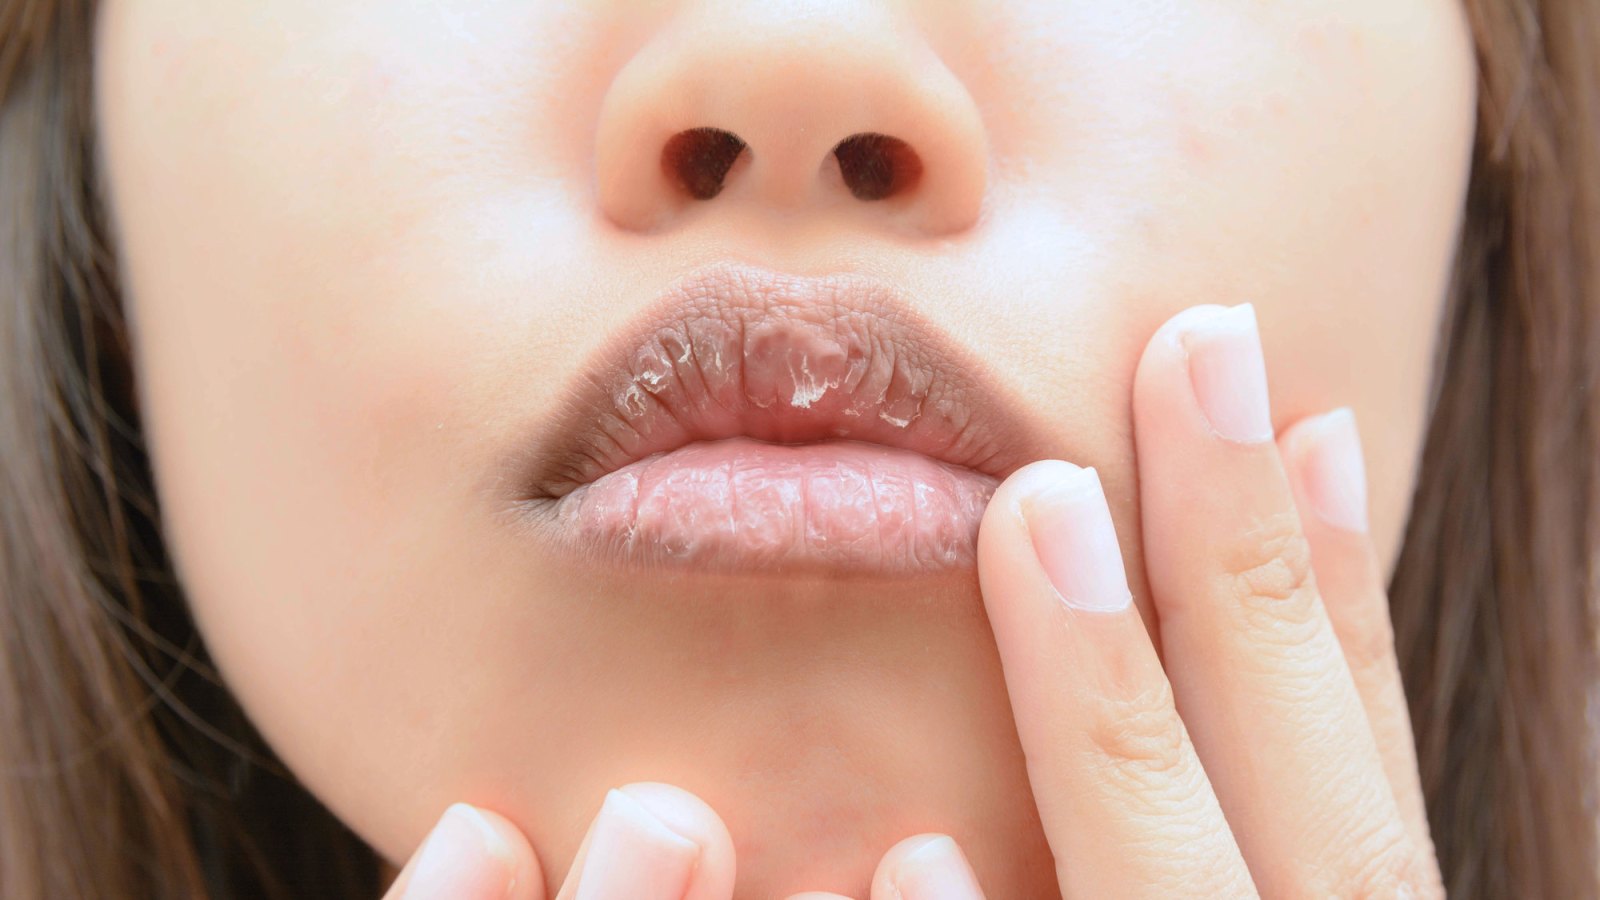 Chapped-Lips-Stock-Photo